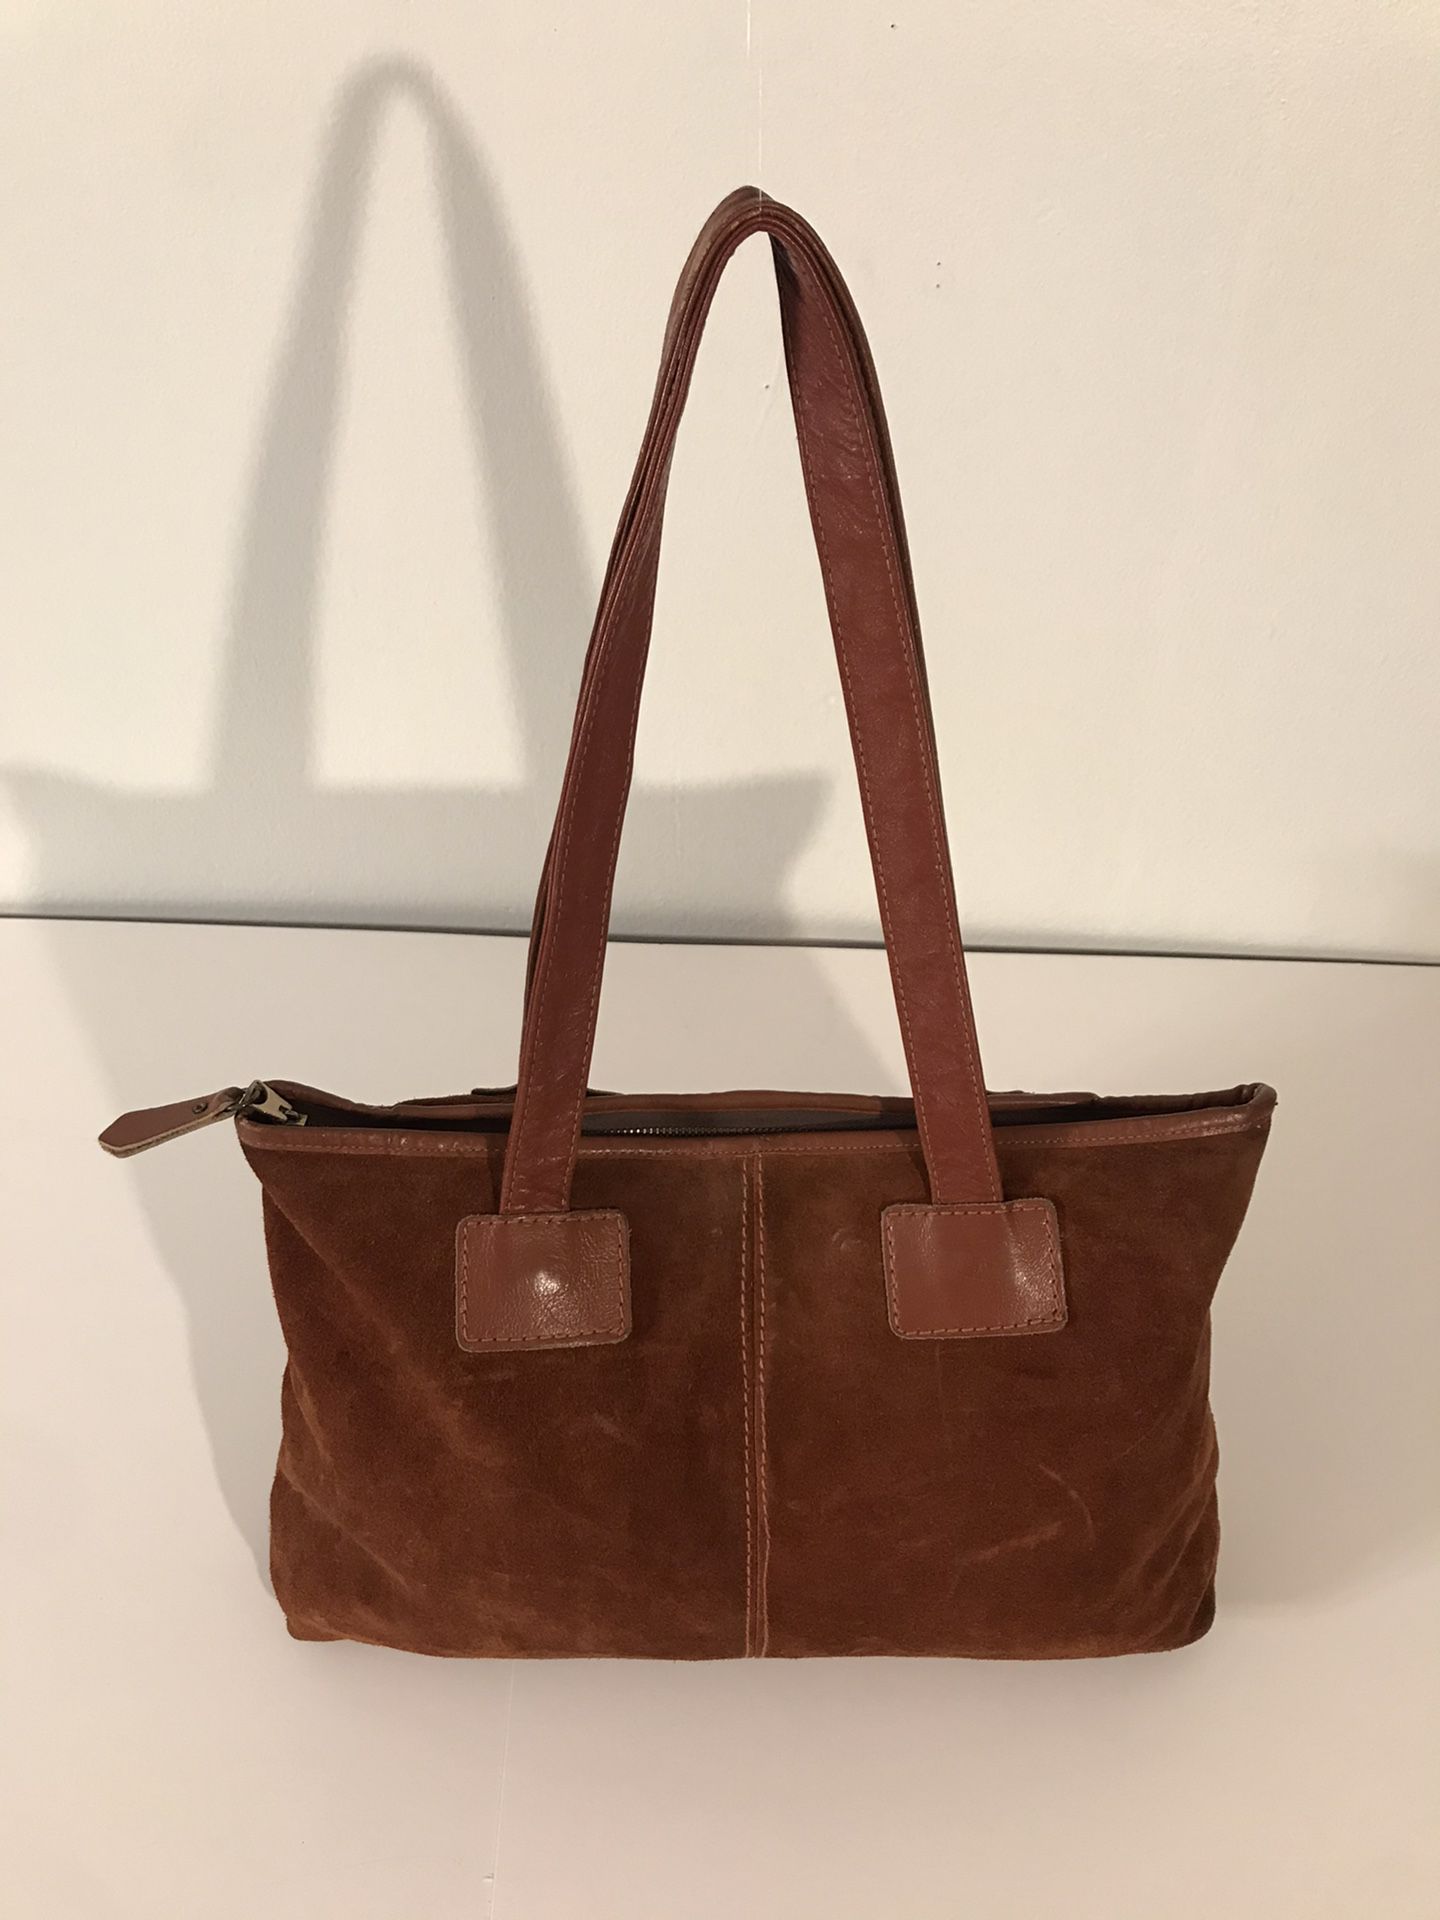 Vintage Ronay Genuine Smooth Brown Leather & Brown Suede Leather Tote Handbag